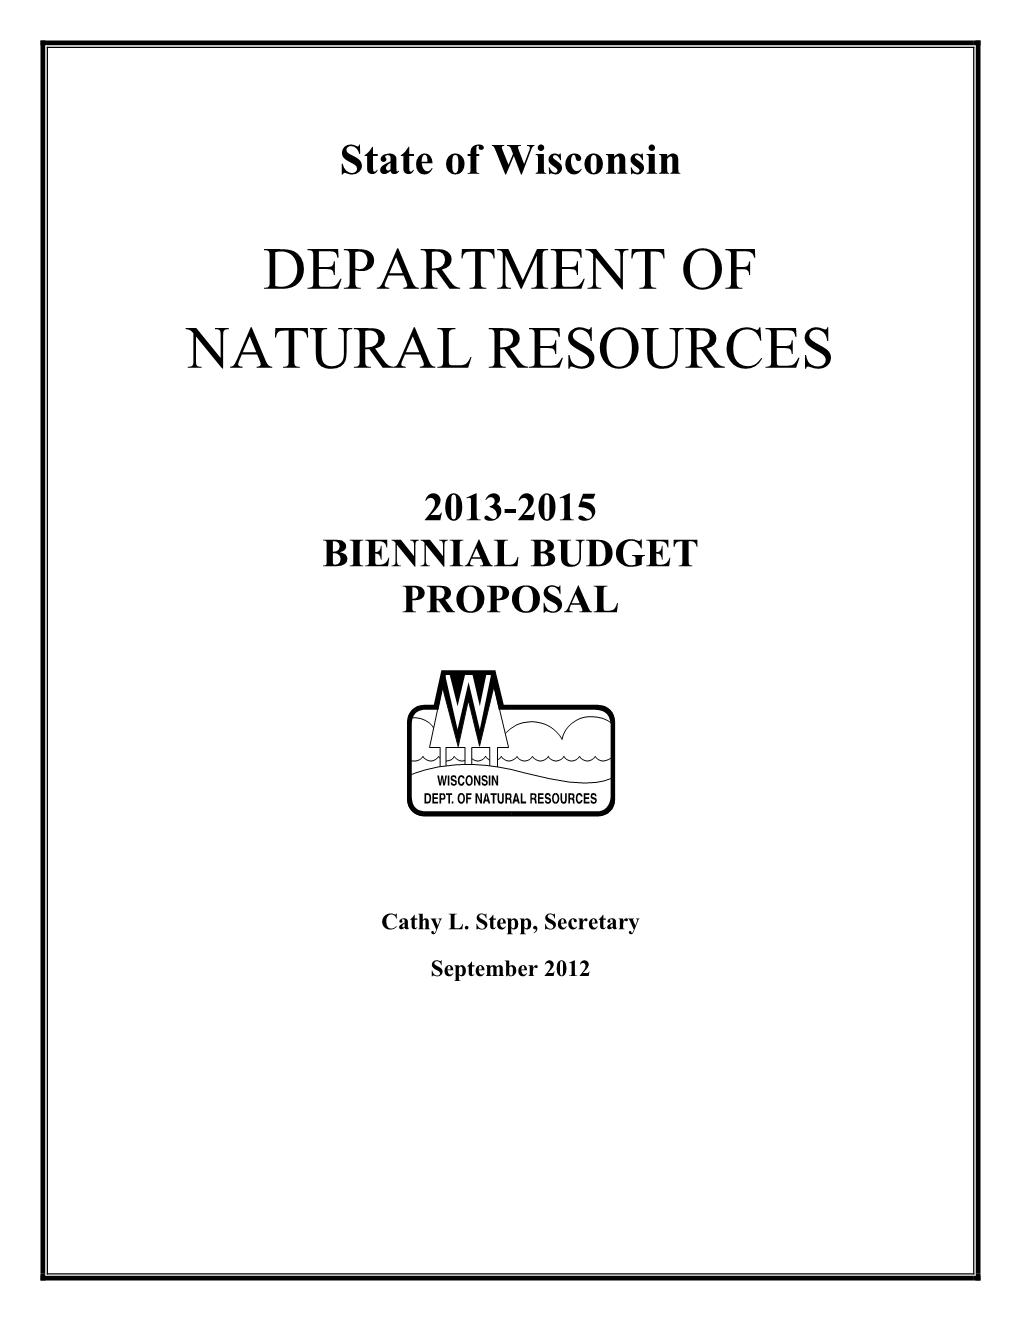 2013-15 Biennial Budget